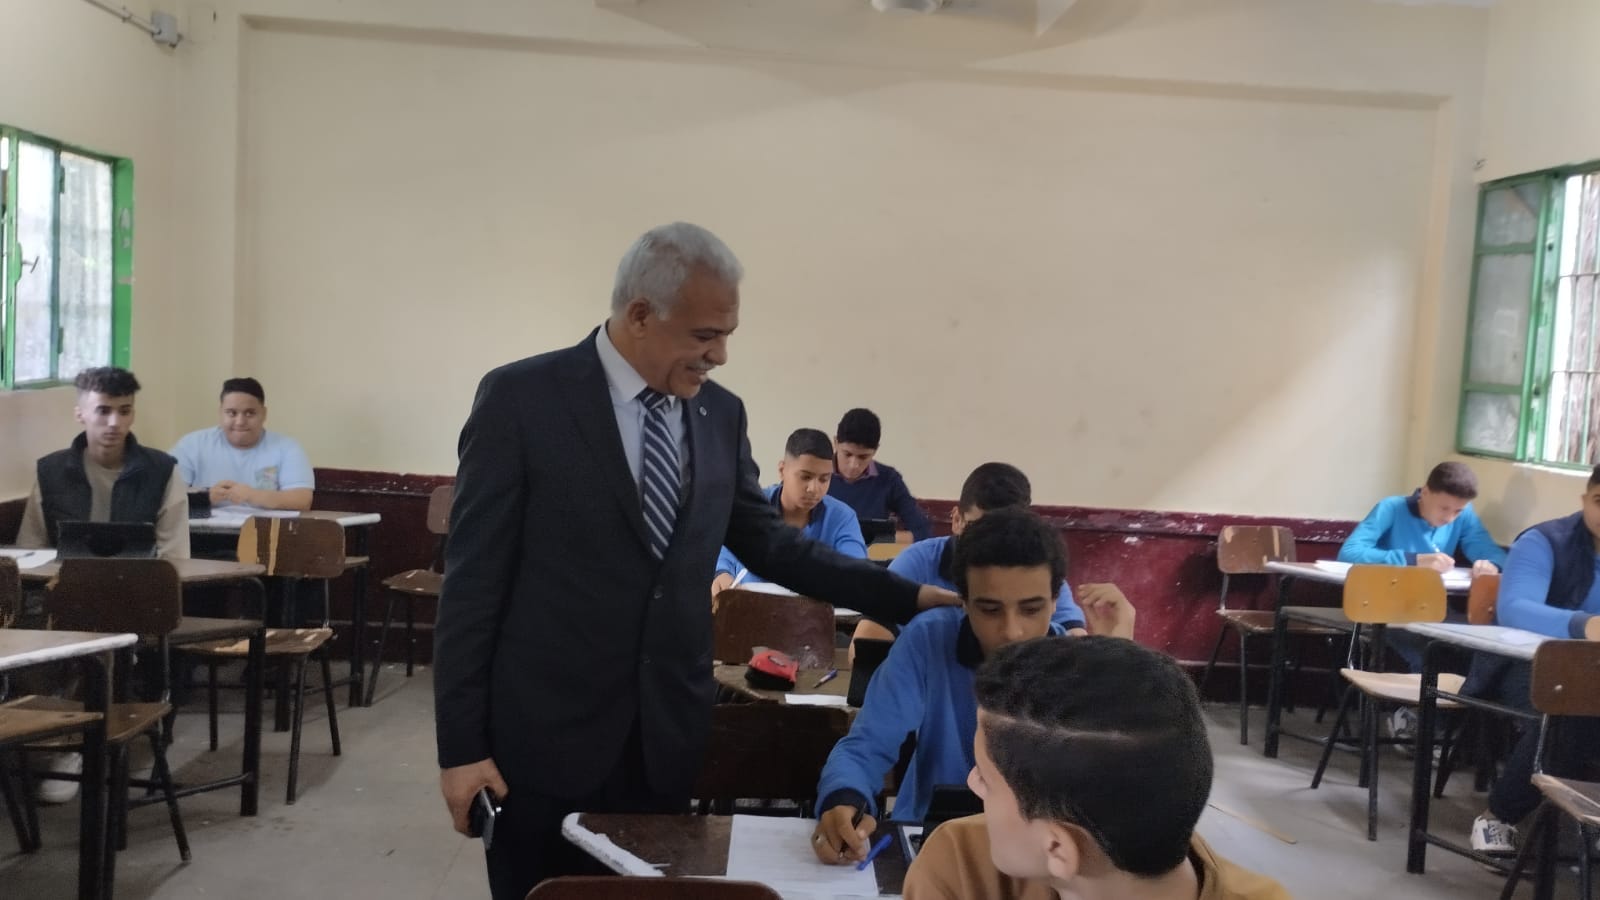 متابعة الاستاذ ايمن موسي سير أعمال الإمتحانات بمدرسة الطبرى الثانوية بنين - إدارة مصر الجديدة التعليمية